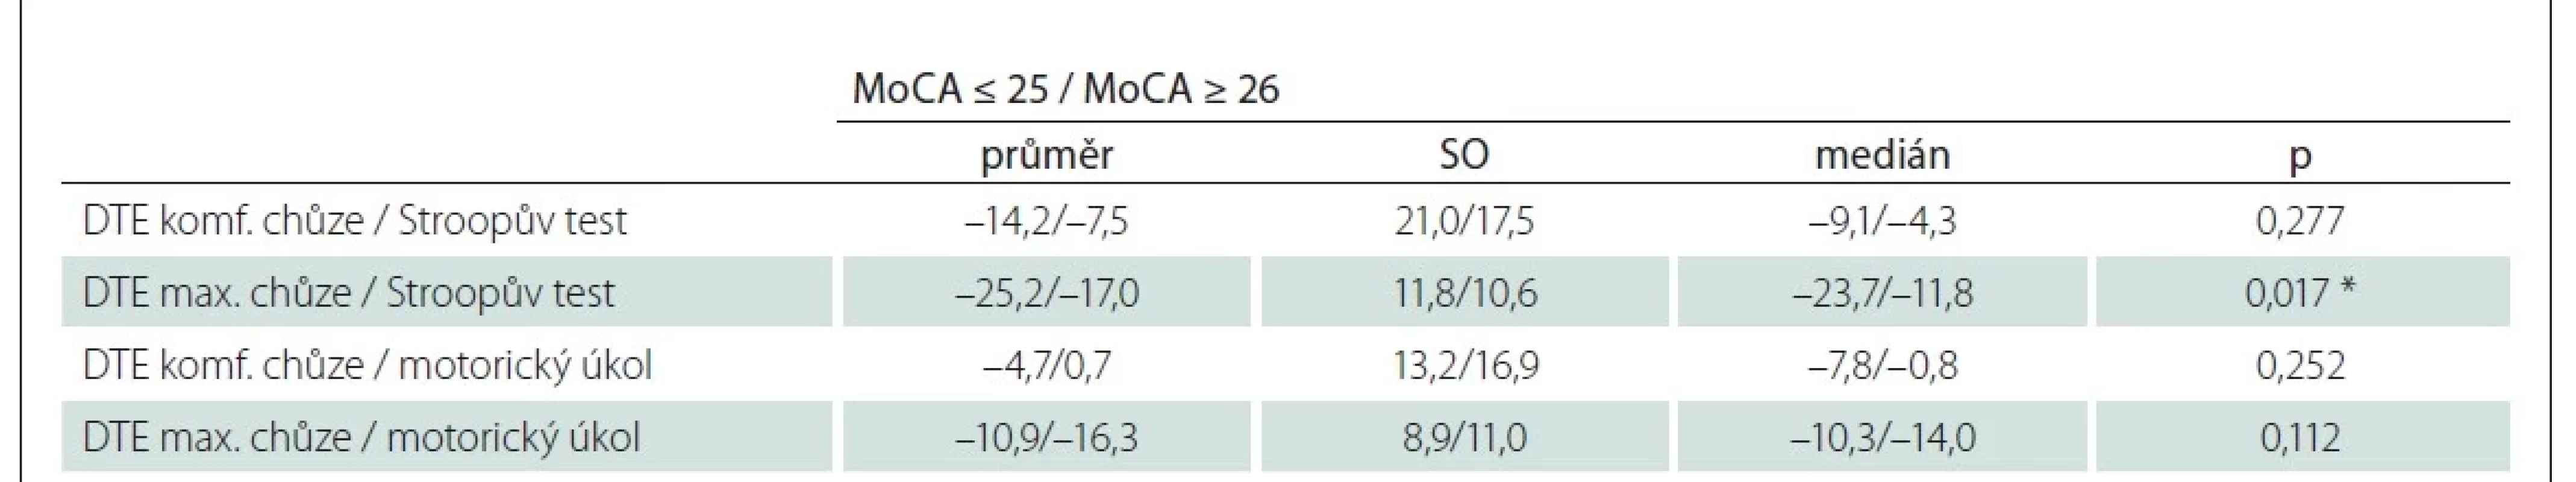 Porovnání efektu dvojího úkolu na rychlost chůze během 10MWT pro jednotlivé podmínky na základě rozdělení skupin dle
MoCA.